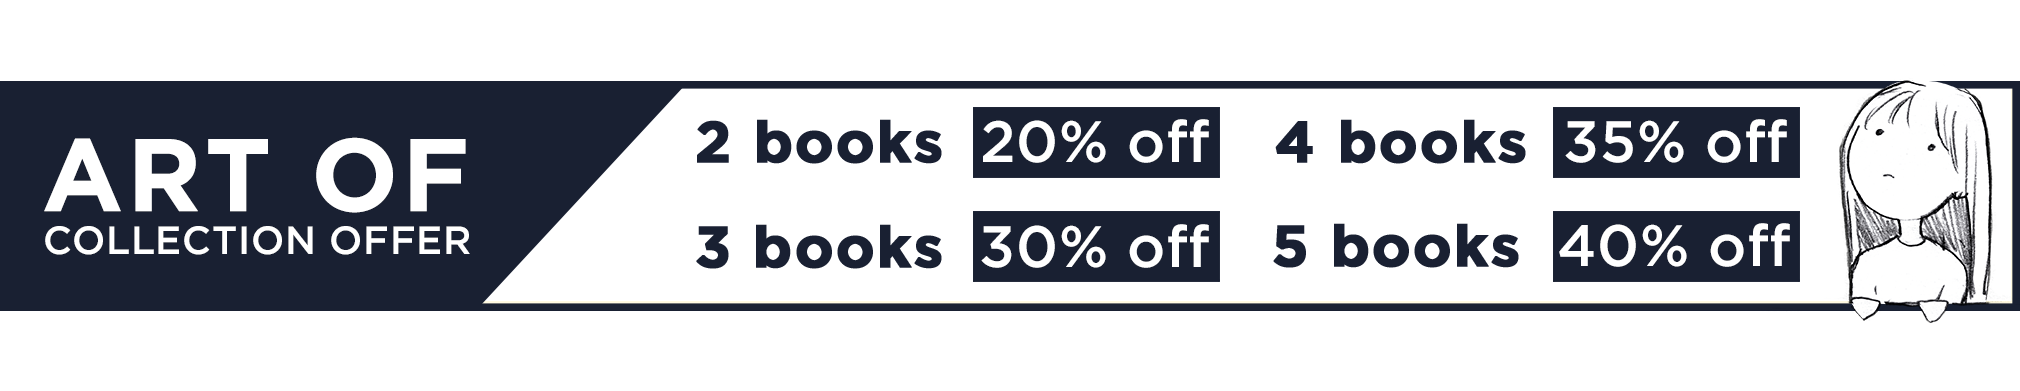 "Art of" Books Offer: 2 for 20% off, 3 for 30% off, 4 for 35% off, 5+ for 40% off